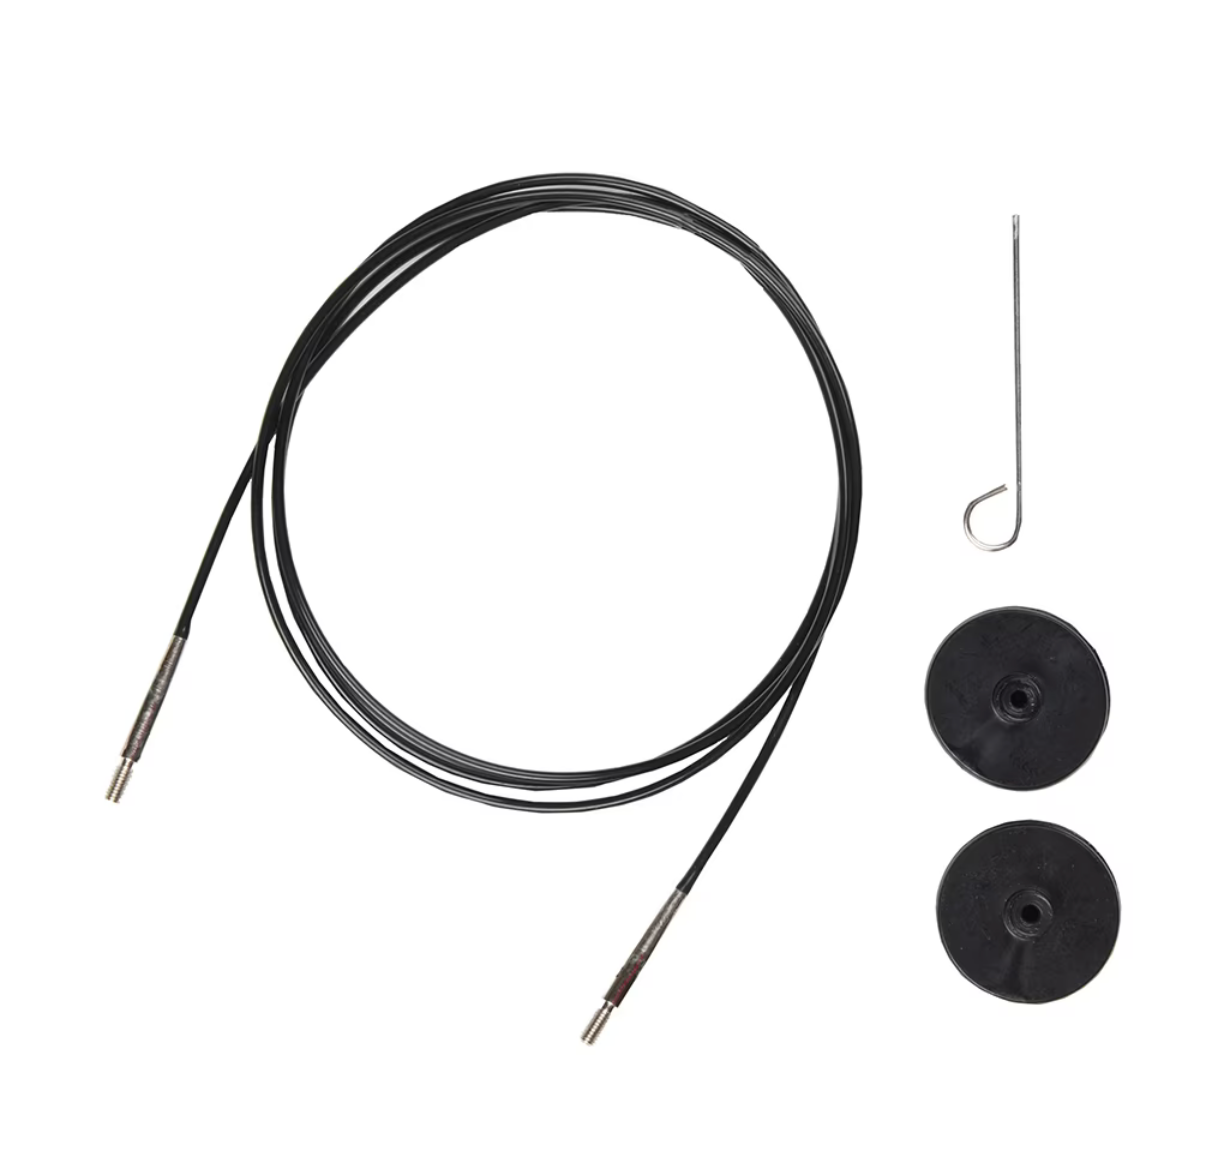 LYKKE Interchangeable Cords for 3.5" tips - Black